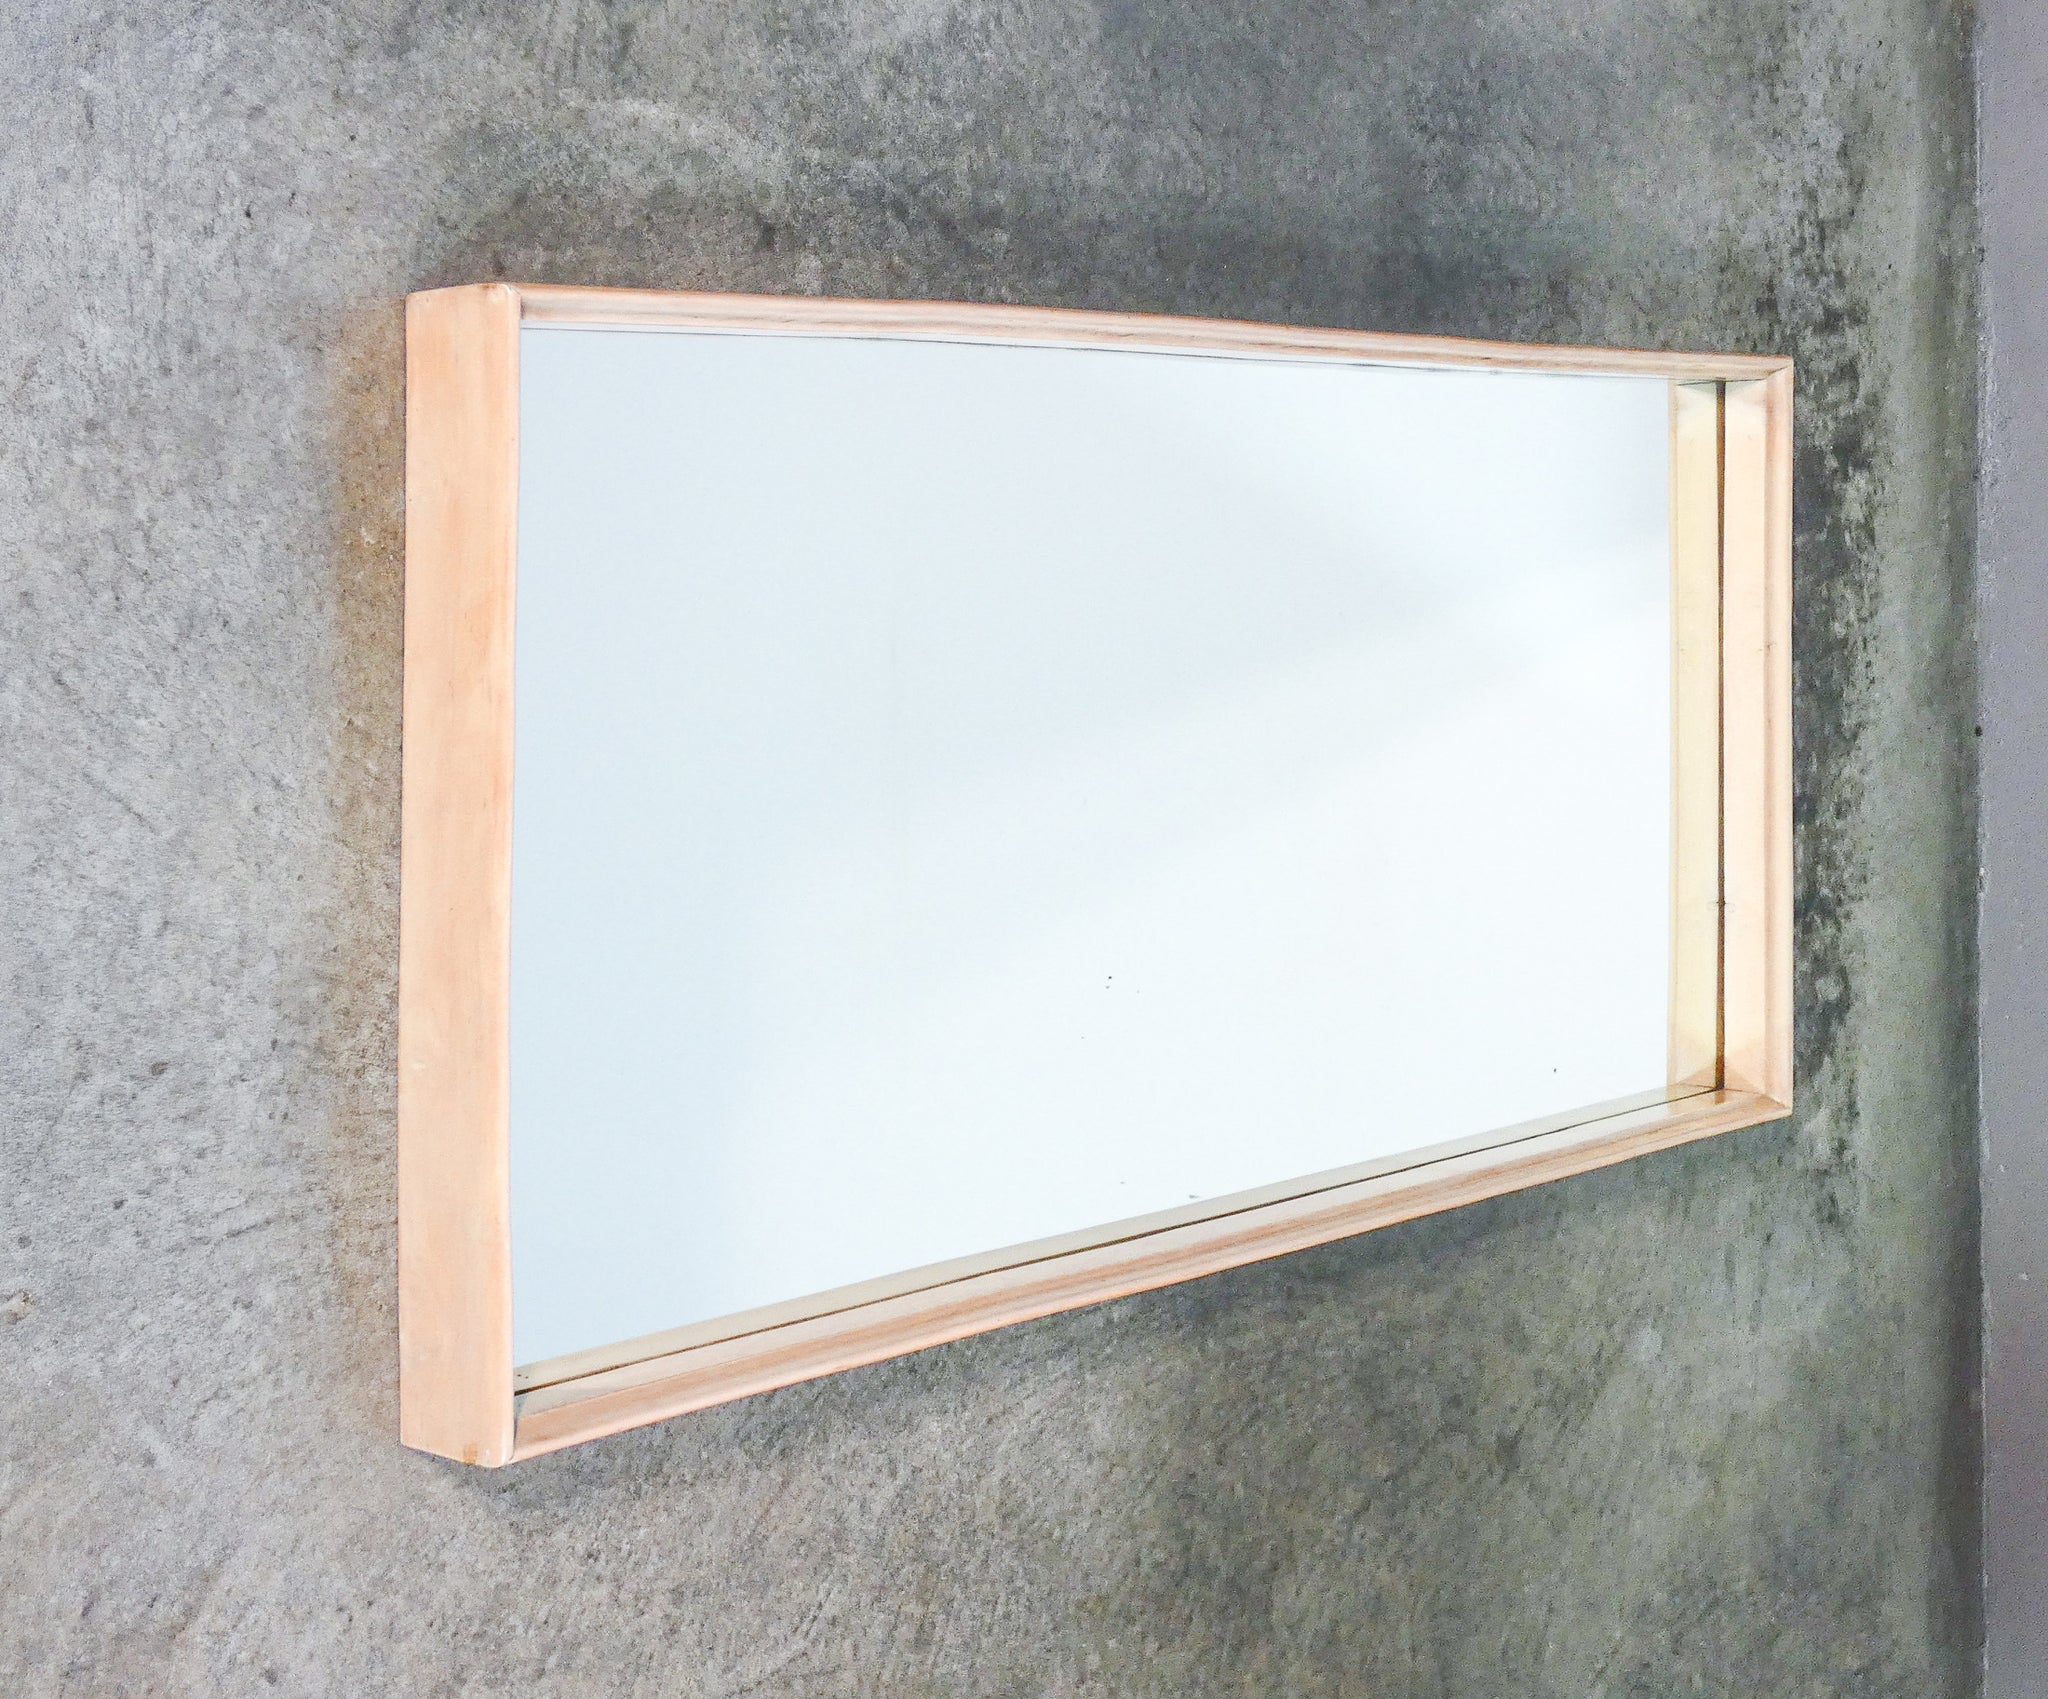 specchiera design italia stile valabrega specchio vintage 1950s legno laccato